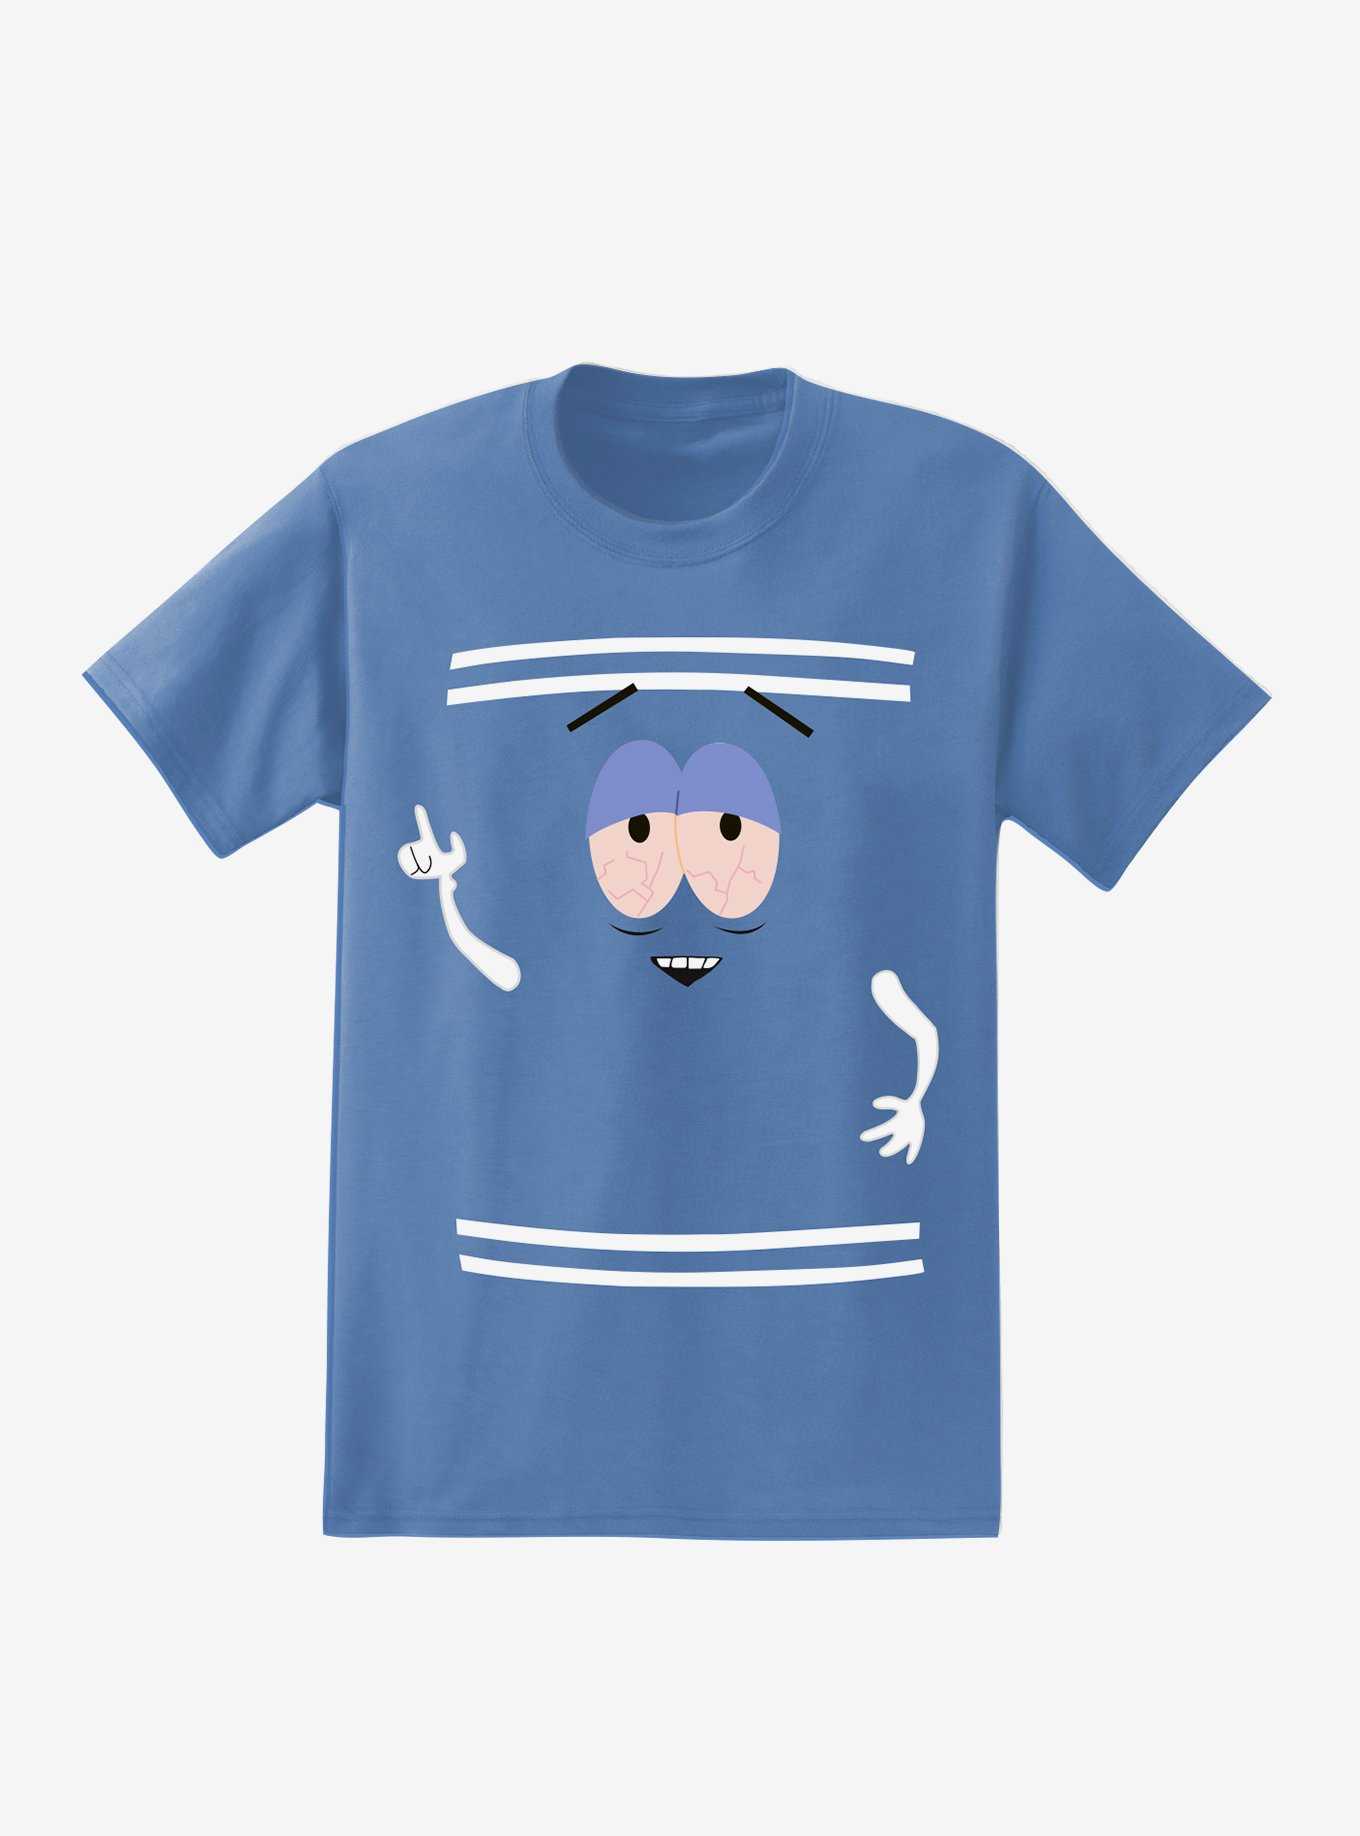 South Park Towelie T-Shirt, , hi-res